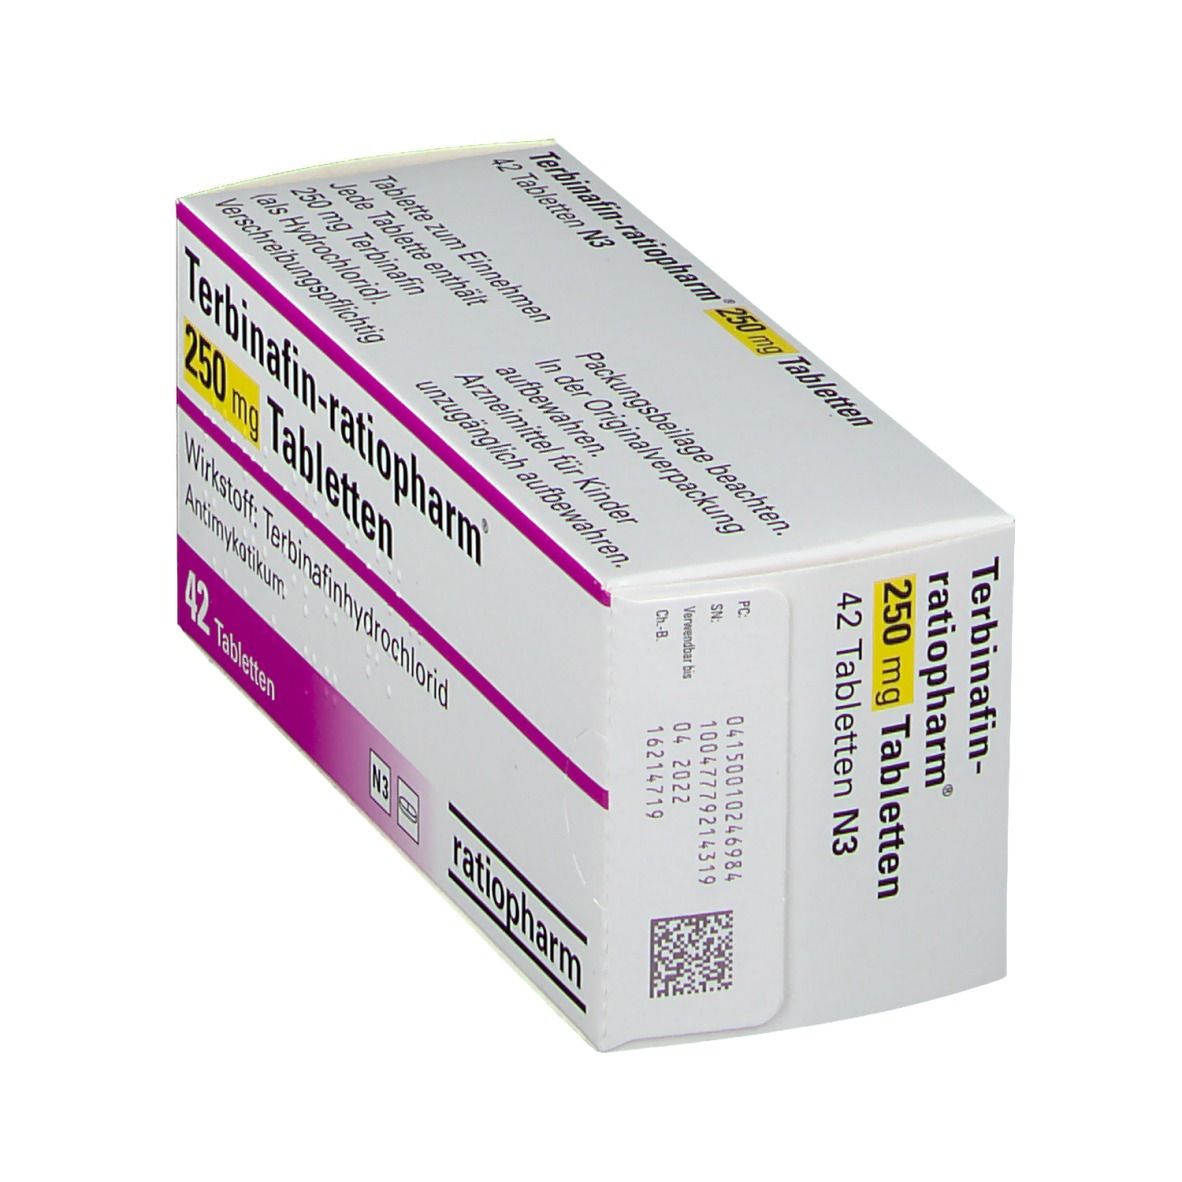 Terbinafin-ratiopharm® 250 mg